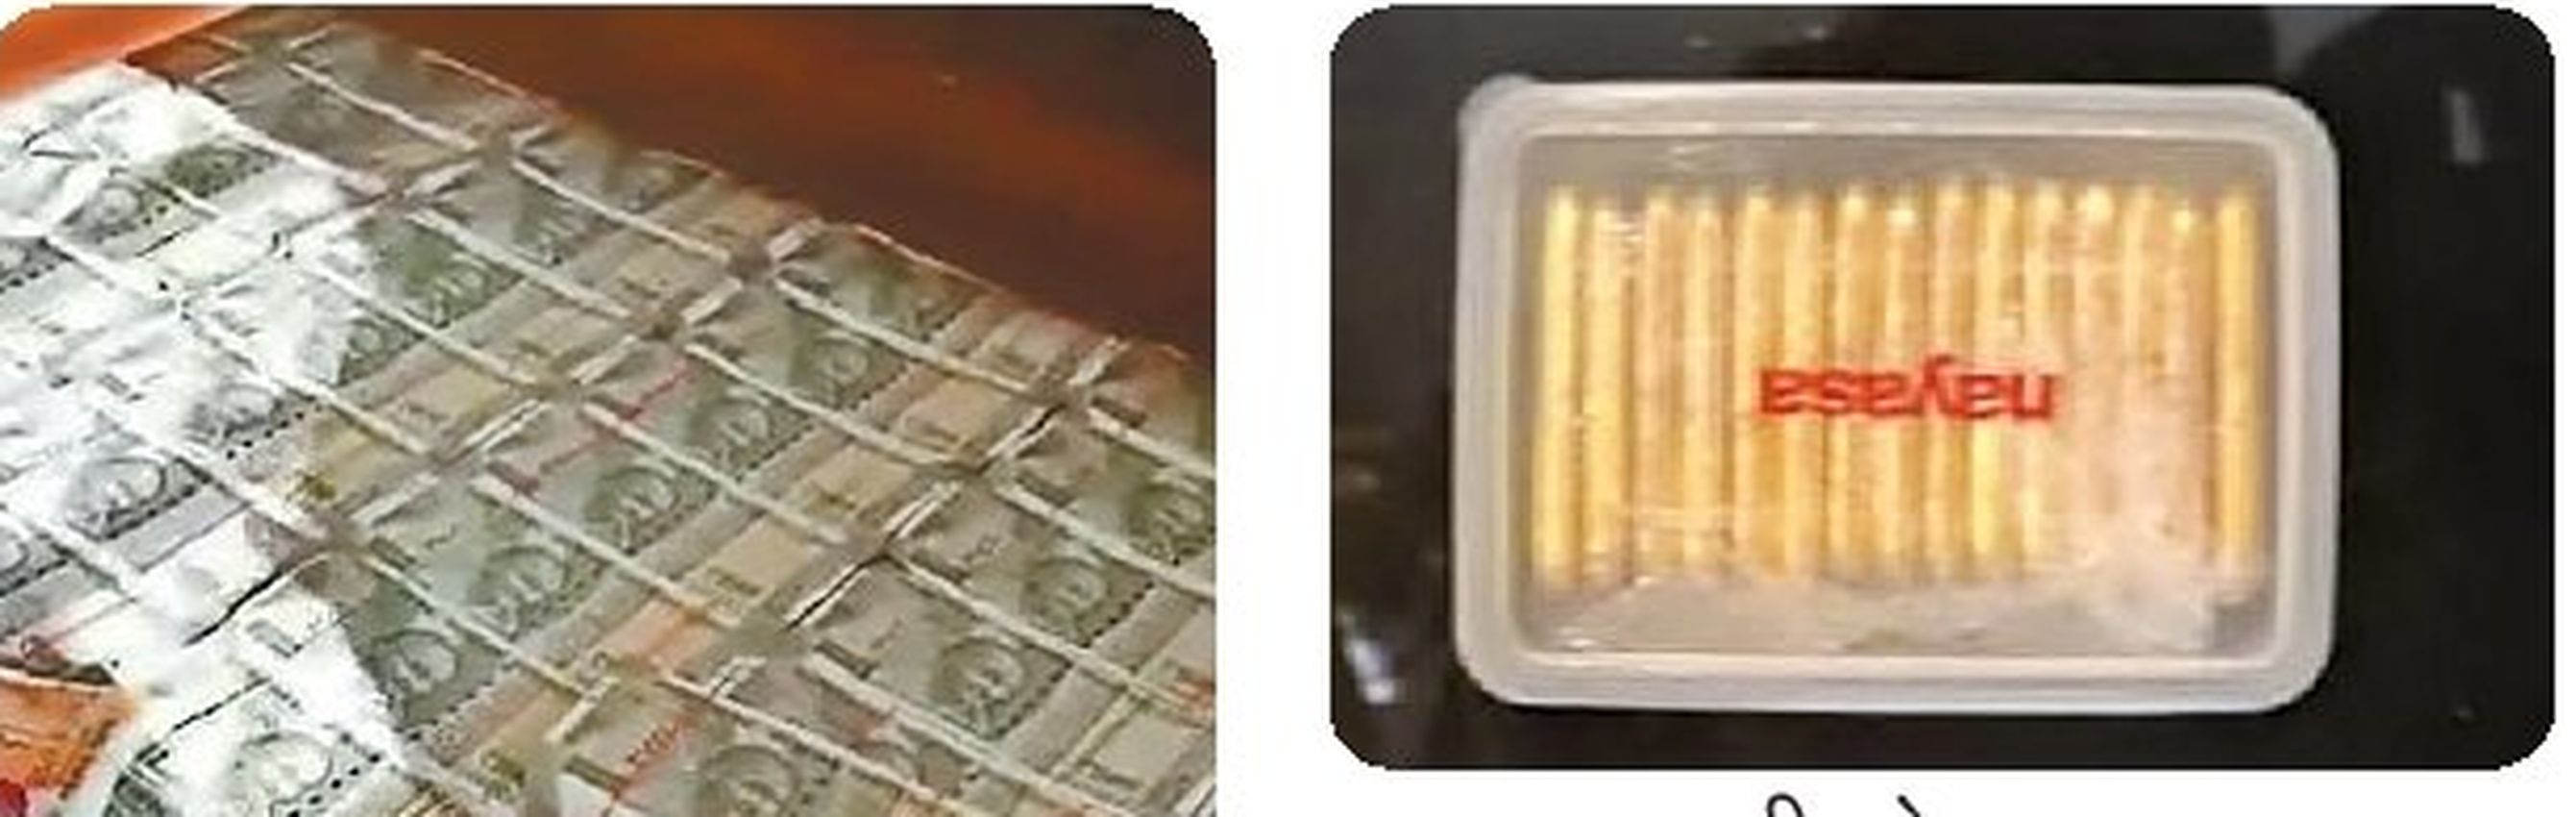 सुरक्षा एजेंसियों की भुज में बड़ी कार्यवाही, 18 लाख के नकली नोटों के साथ डेढ़ किलो सोने के बिस्किट किए बरामद 